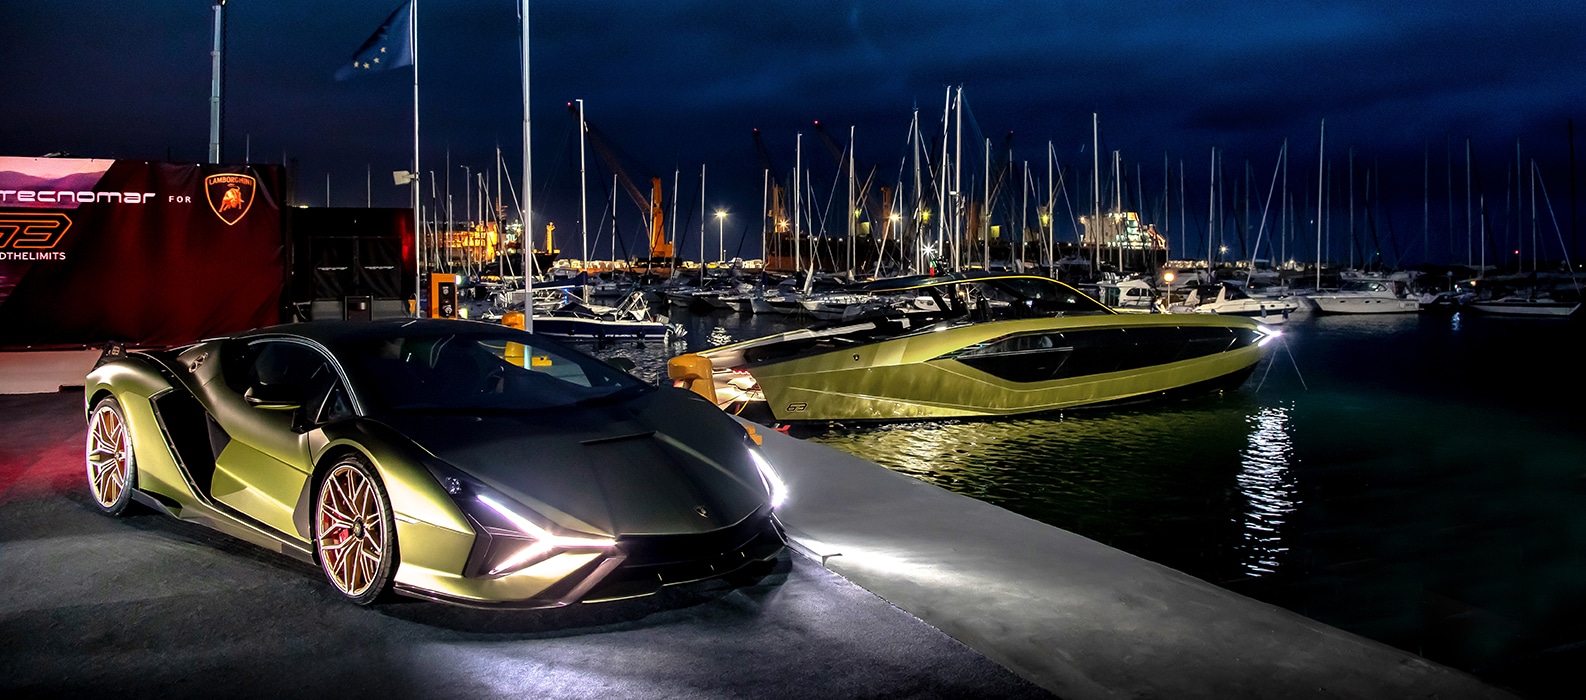 Arrivato il nuovo motor yacht Tecnomar for Lamborghini 63